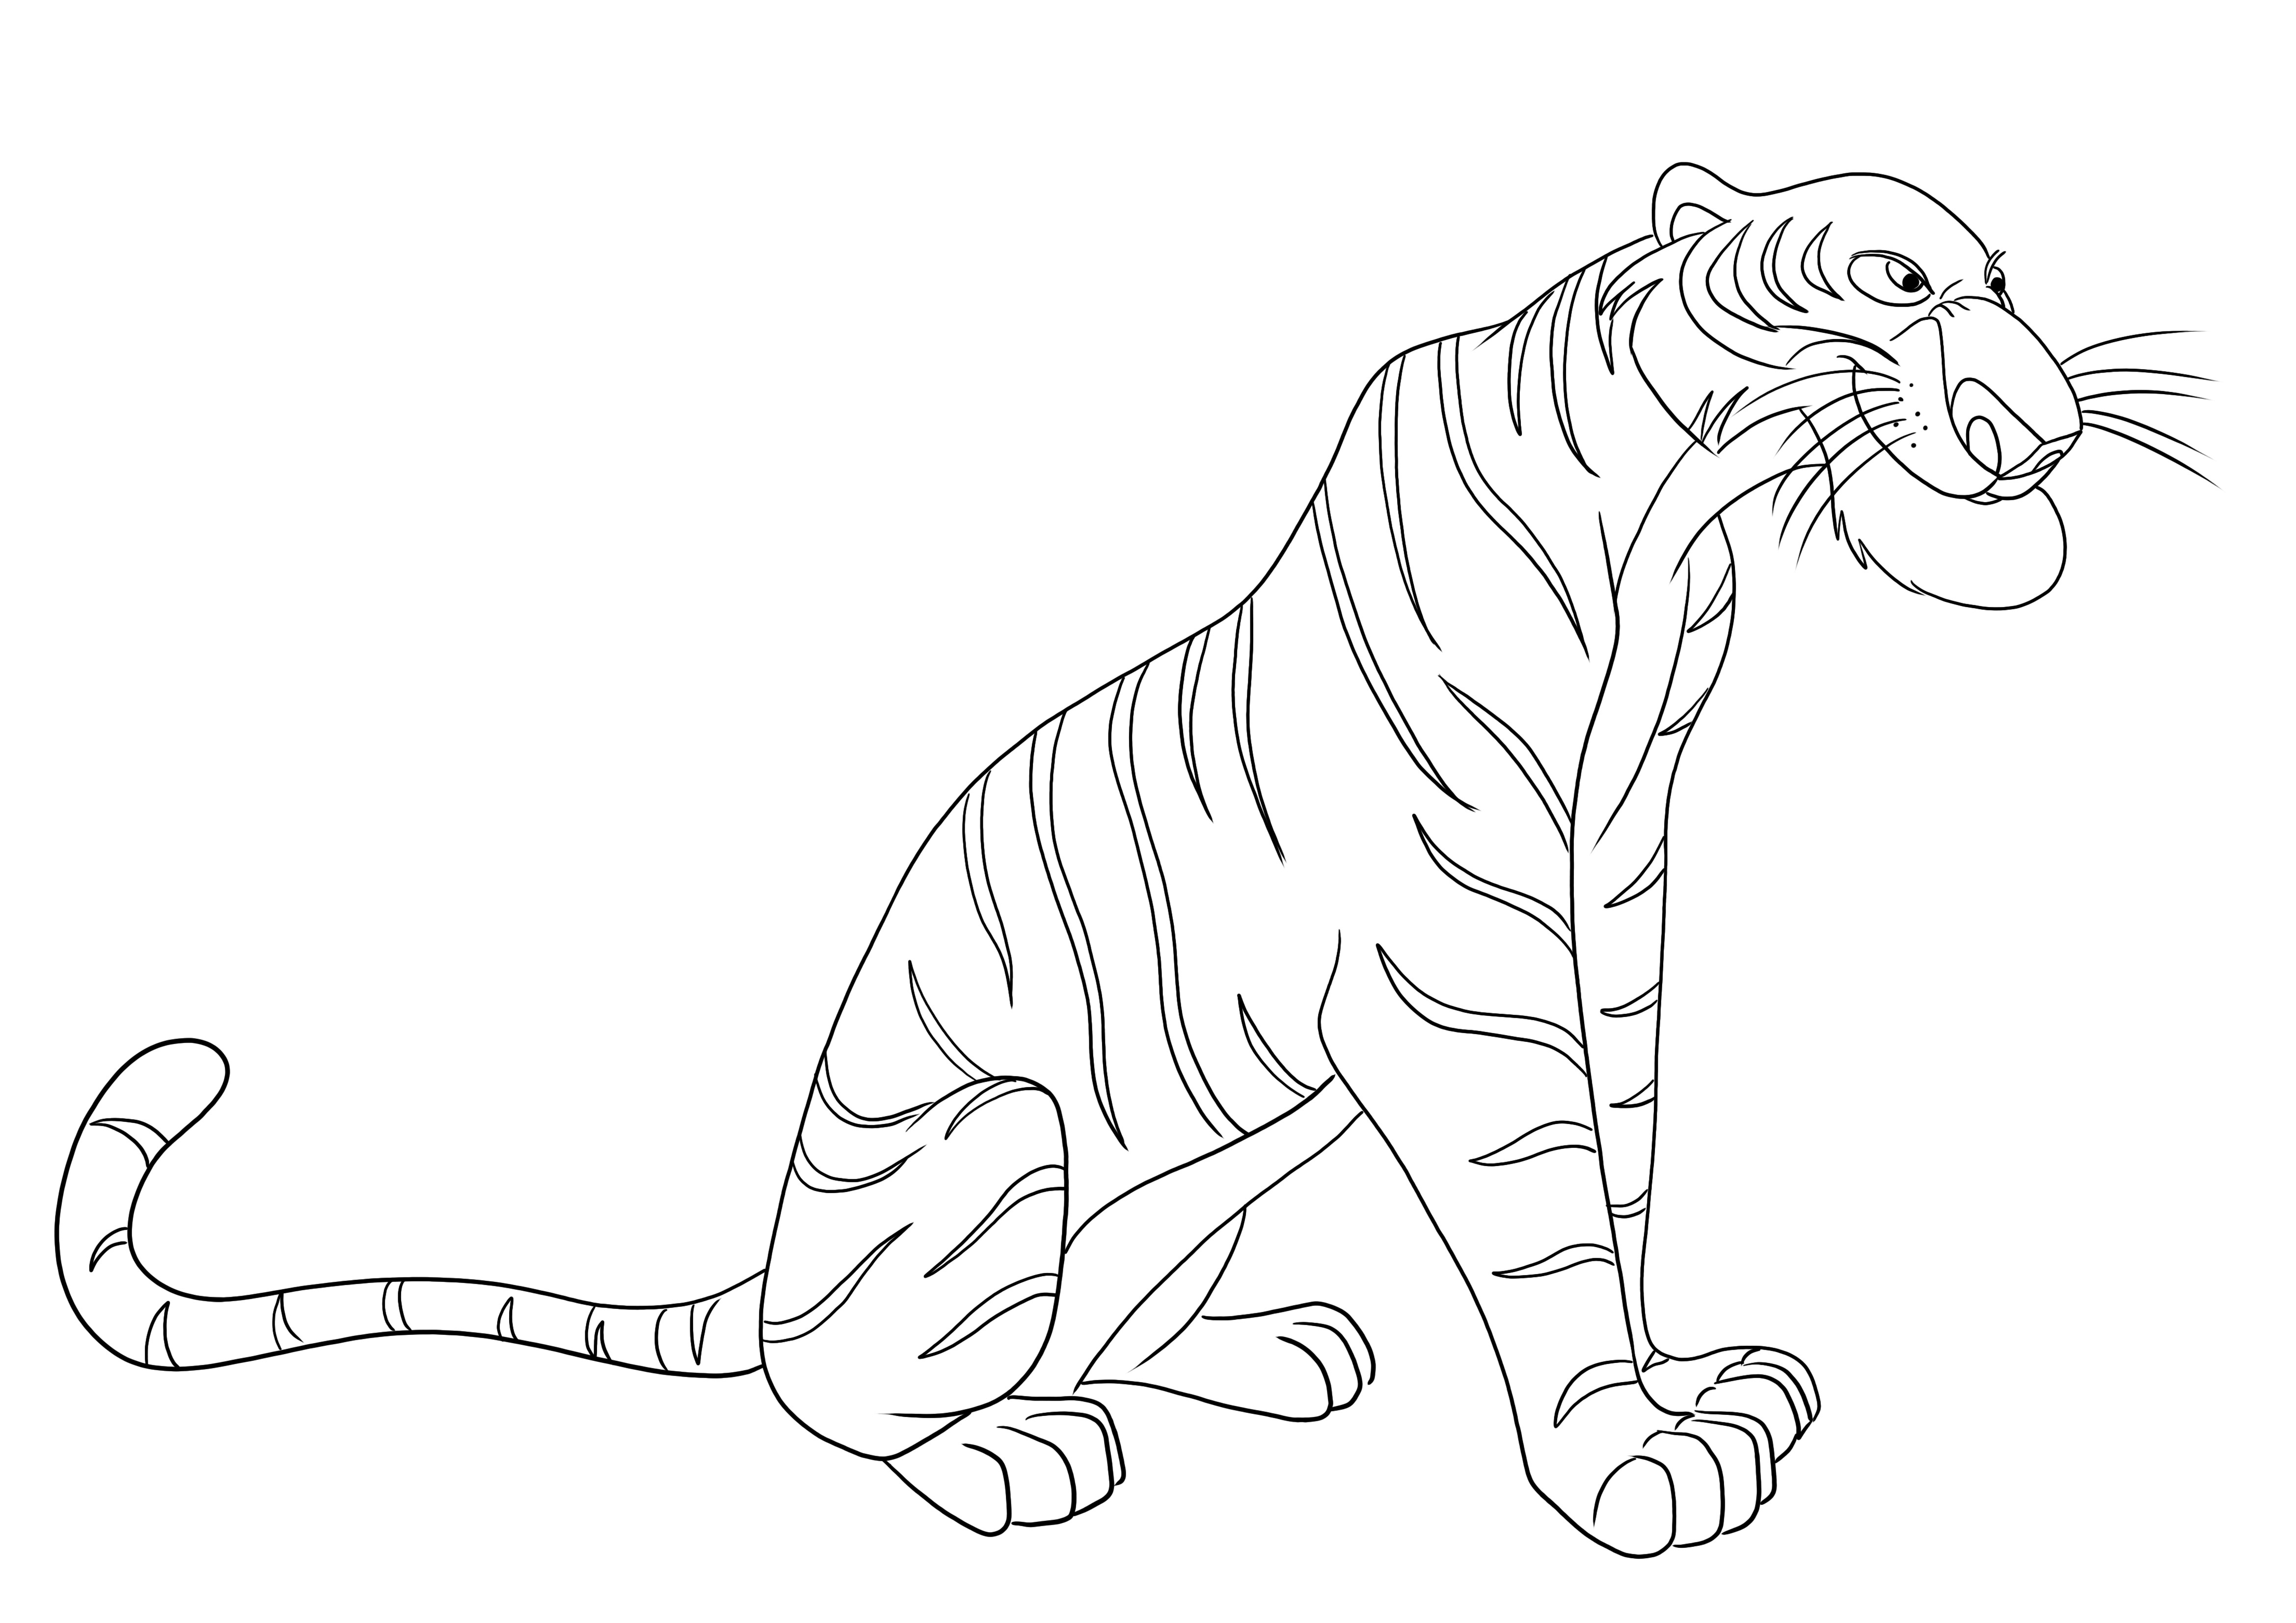 Das Ausmalbild Shere Khan der Tiger aus dem Buch des Dschungels kann kostenlos heruntergeladen werden